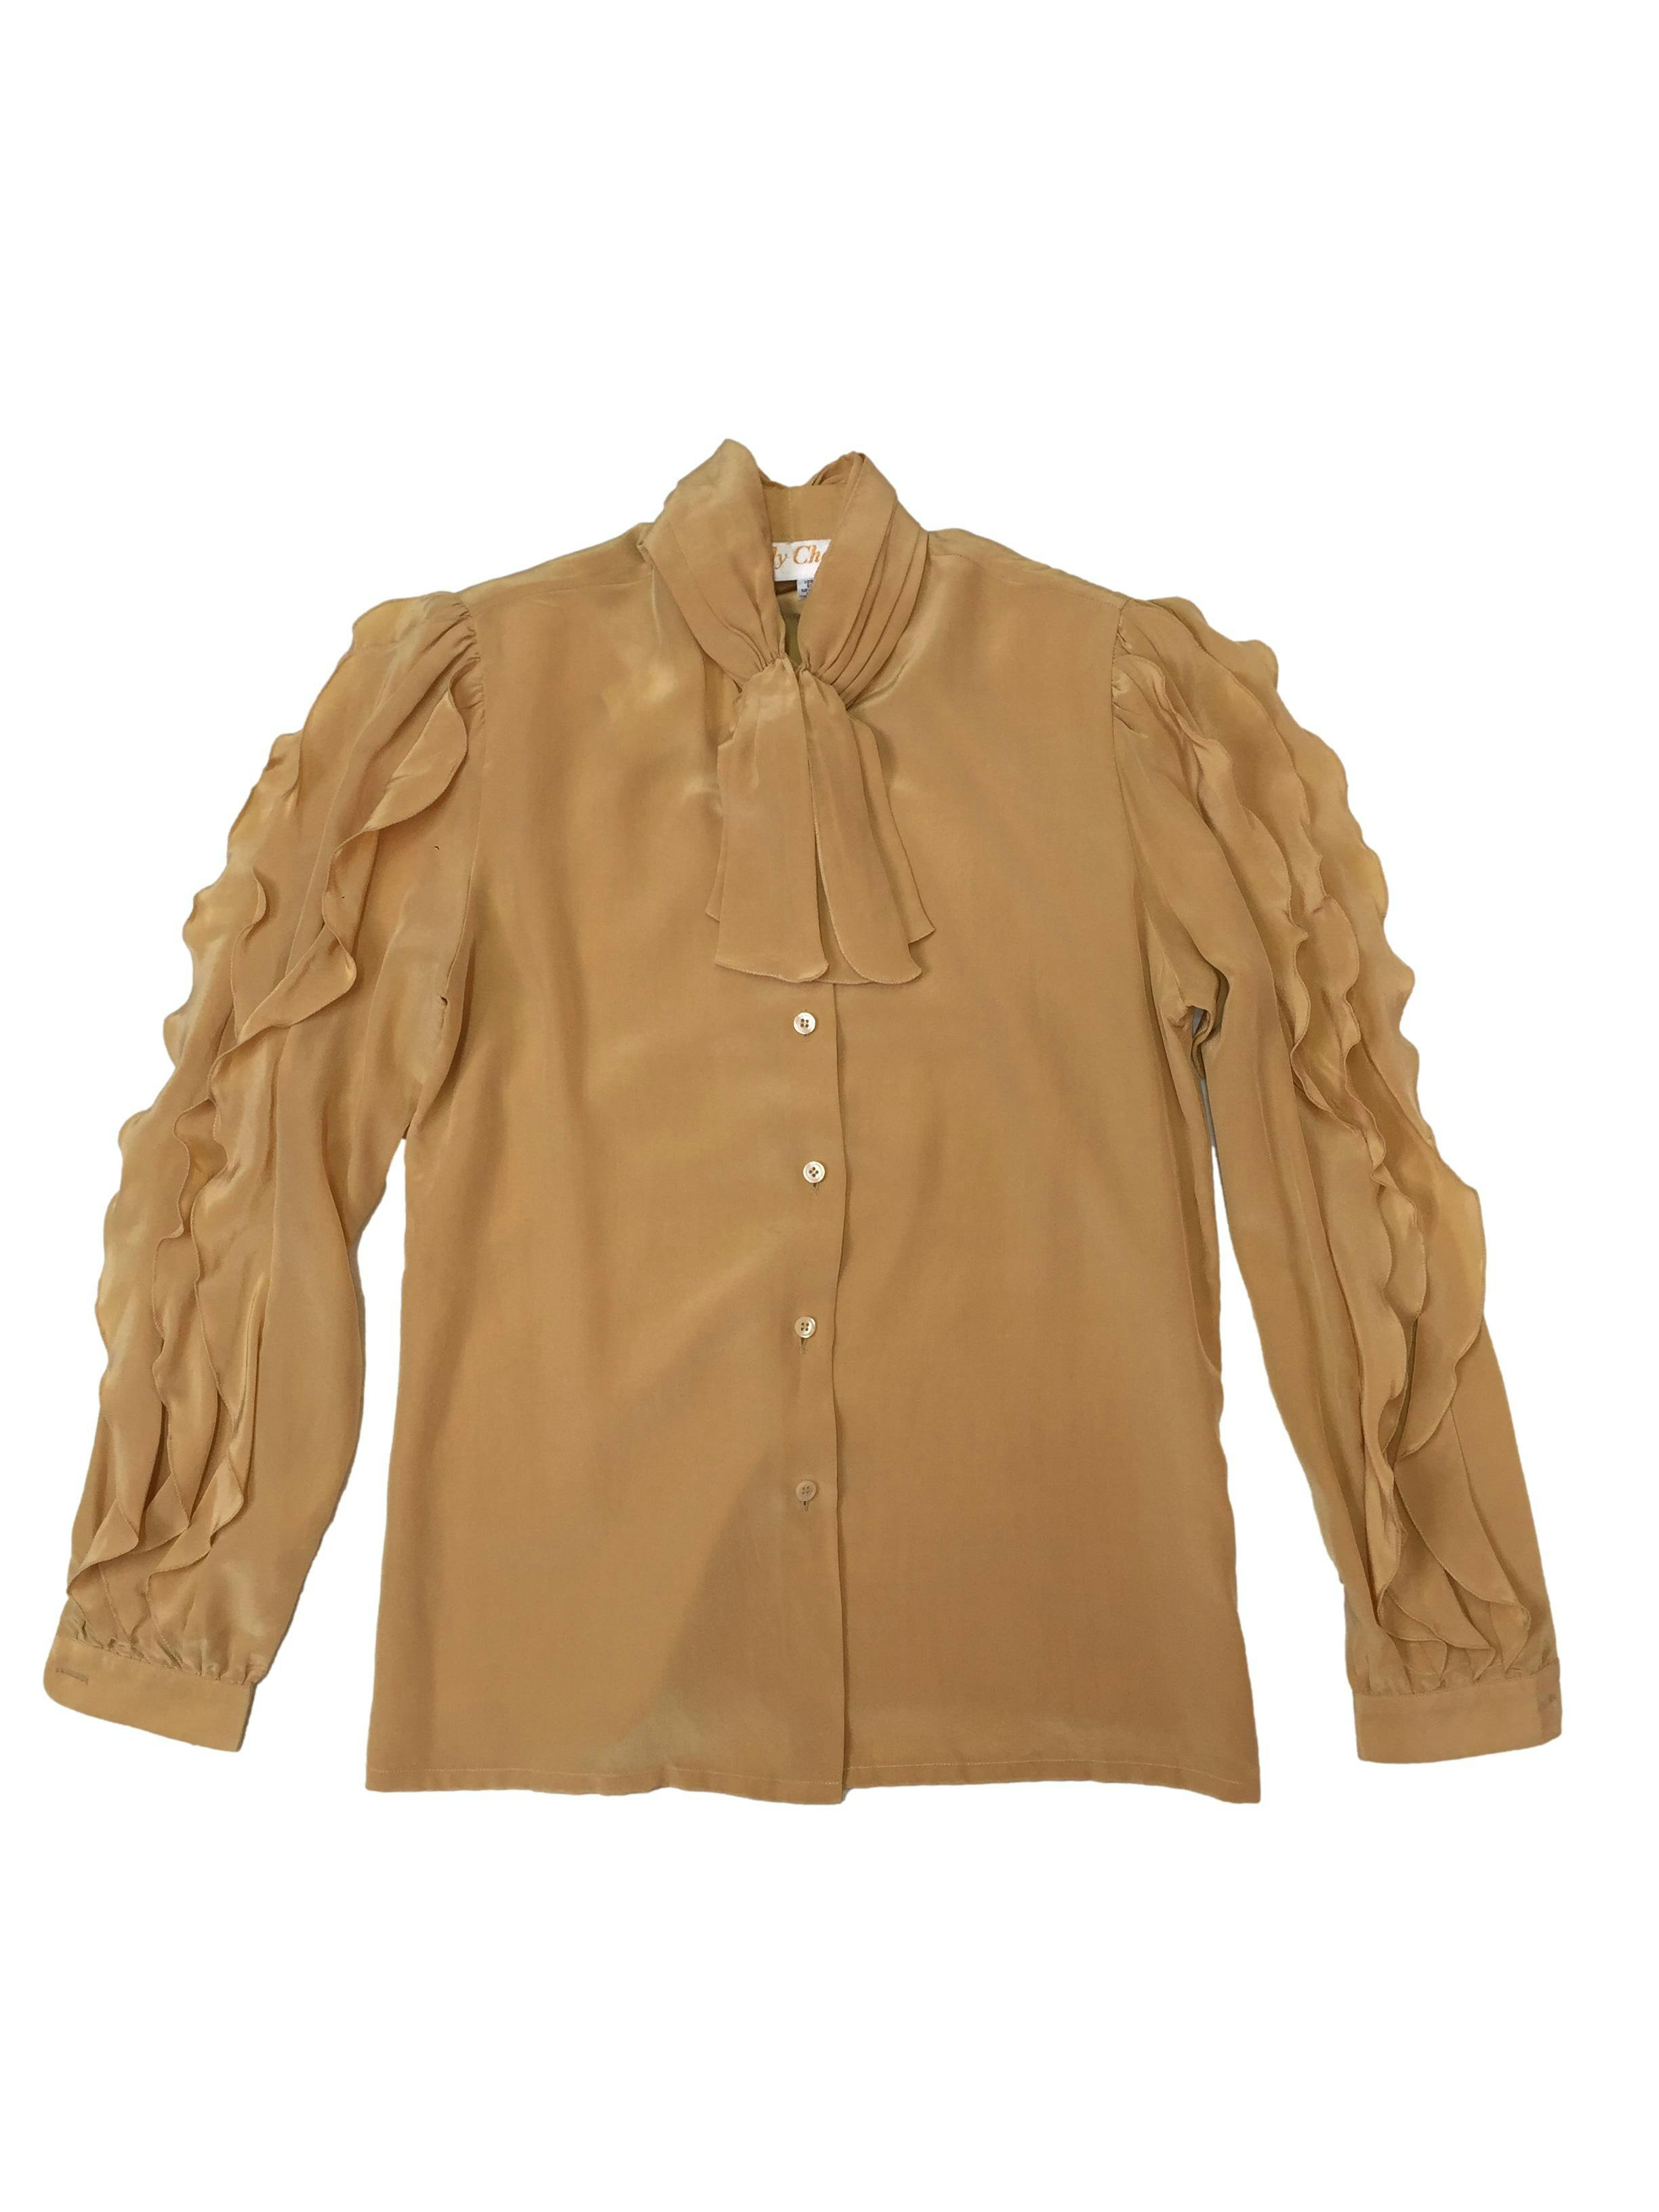 Blusa vintage 100% en color maiz, cuello drapeado con lazo, magas con volantes. Busto 94 cm y largo 60 cm 